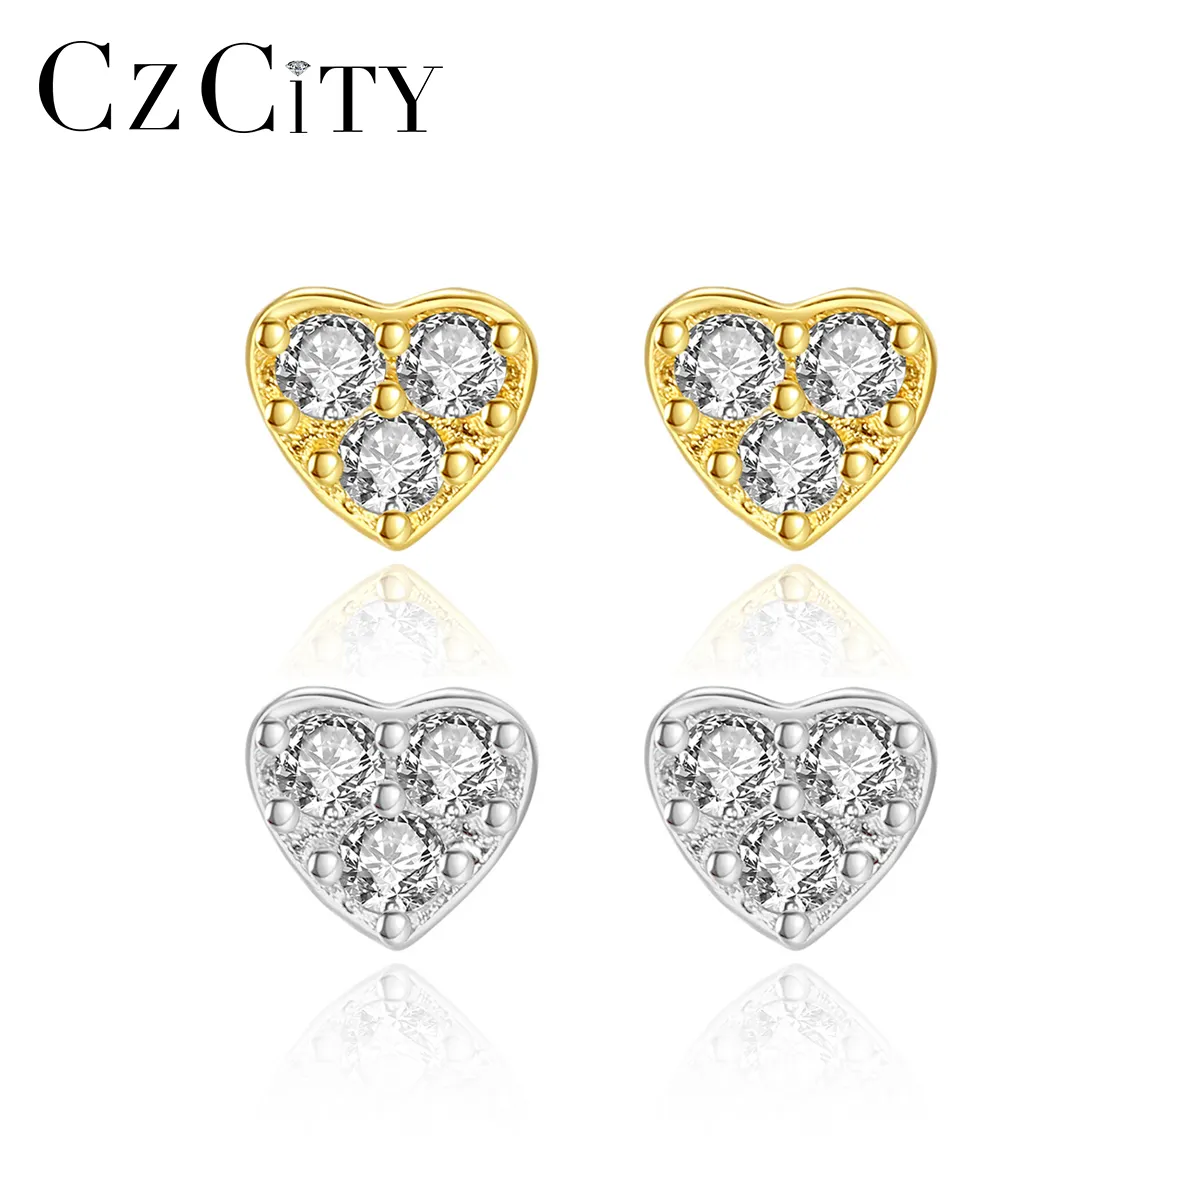 CZCITY Baby Jewelry 925 Sterling Silver Cubic Zironica 2021 Trend Stud Earrings Set Heart Earrings